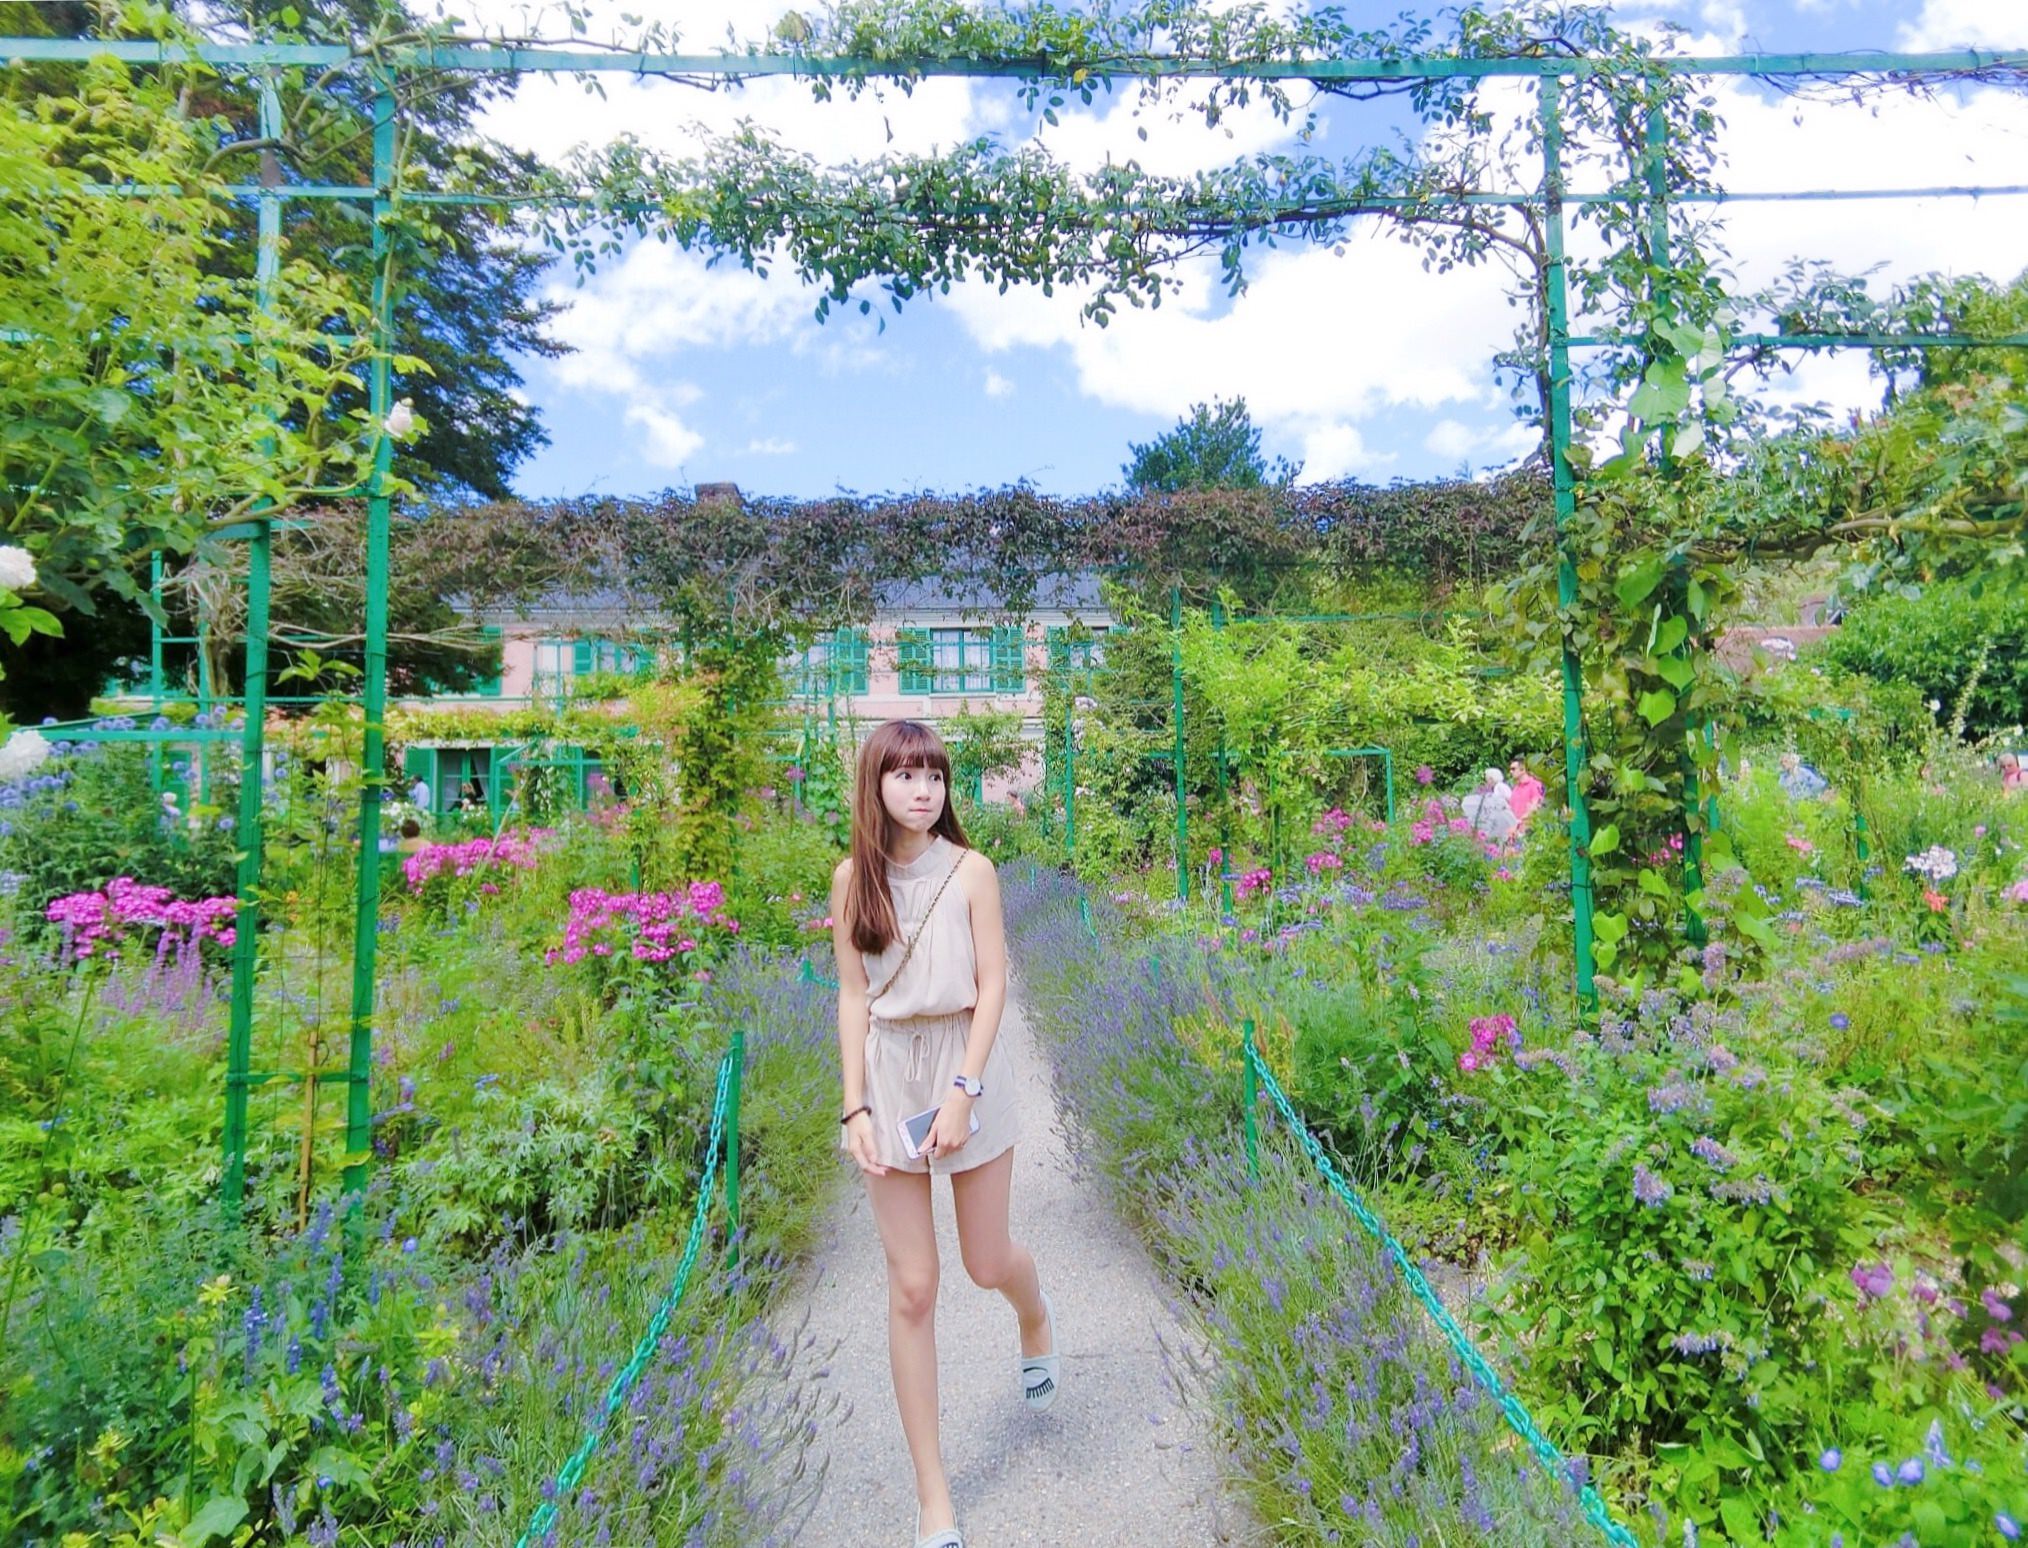 法國巴黎著名景點『浪漫的莫內花園』故居 走入莫內的畫中 內有Giverny Monet 交通資訊分享 ♥ 小Connie愛夢遊。遊記